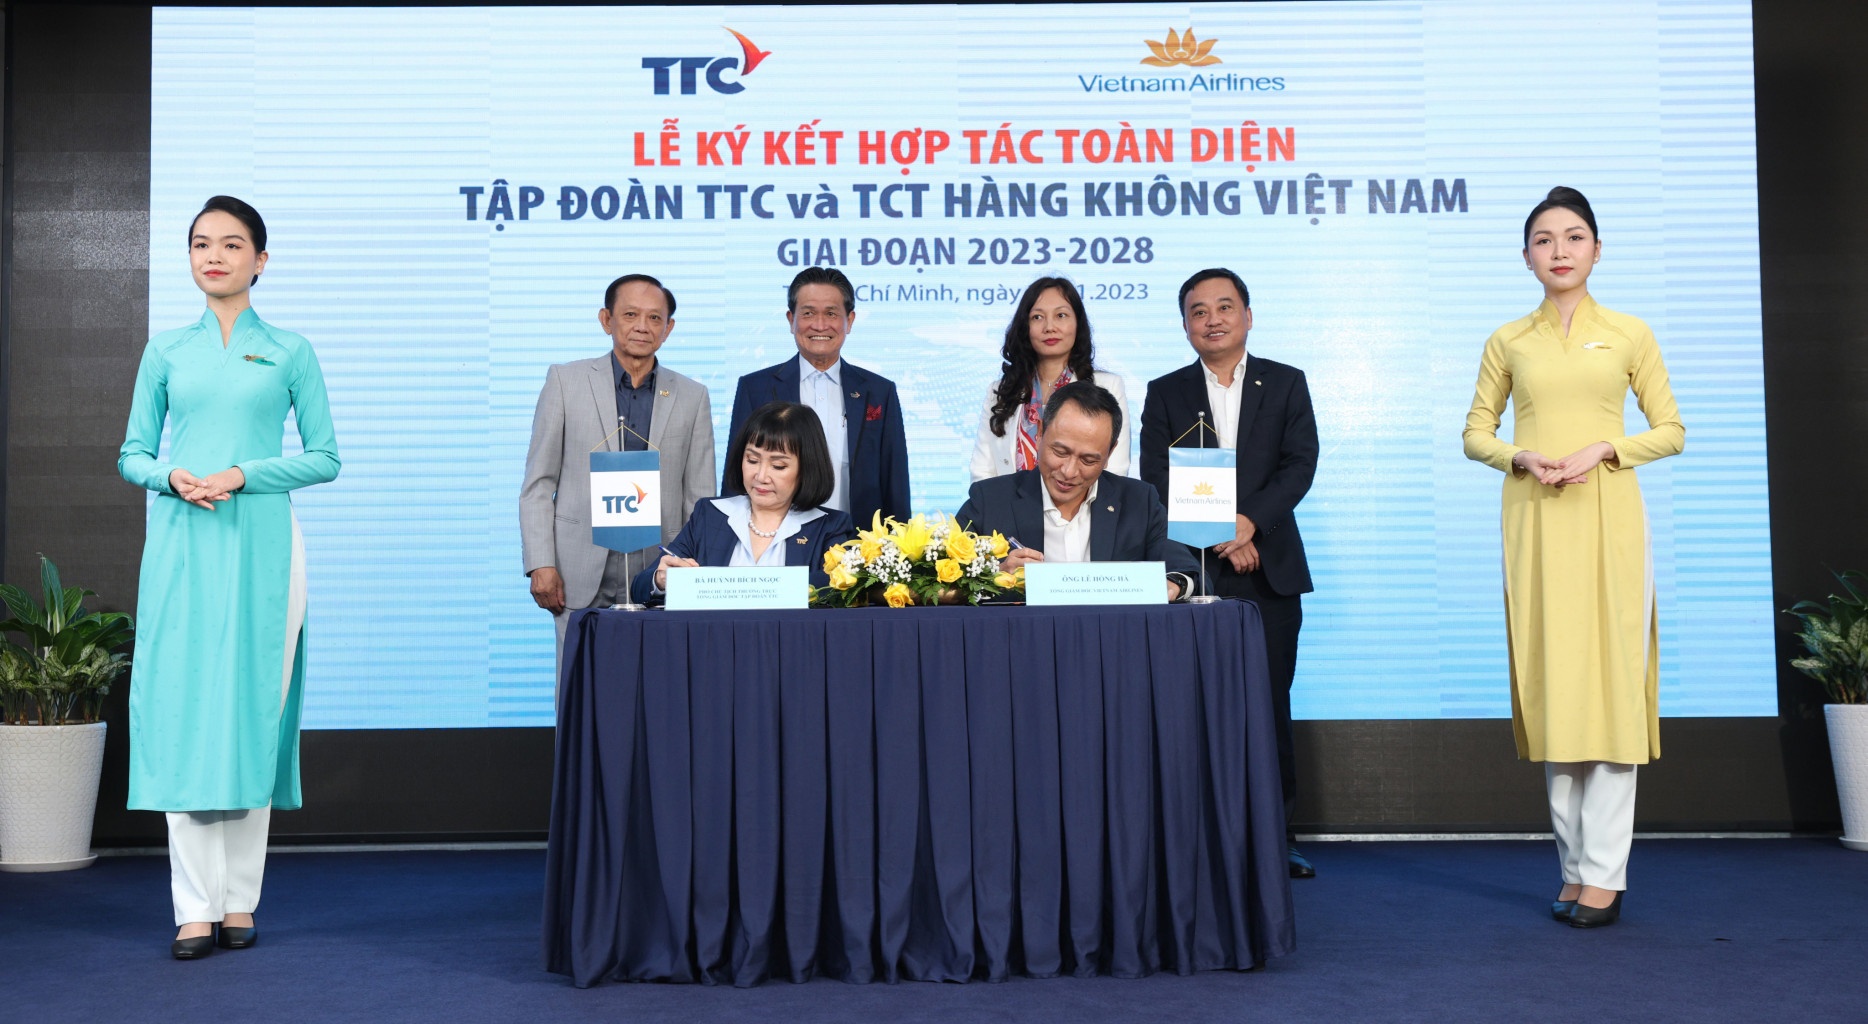 Tập đoàn TTC và Vietnam Airlines ký kết thỏa thuận hợp tác toàn diện